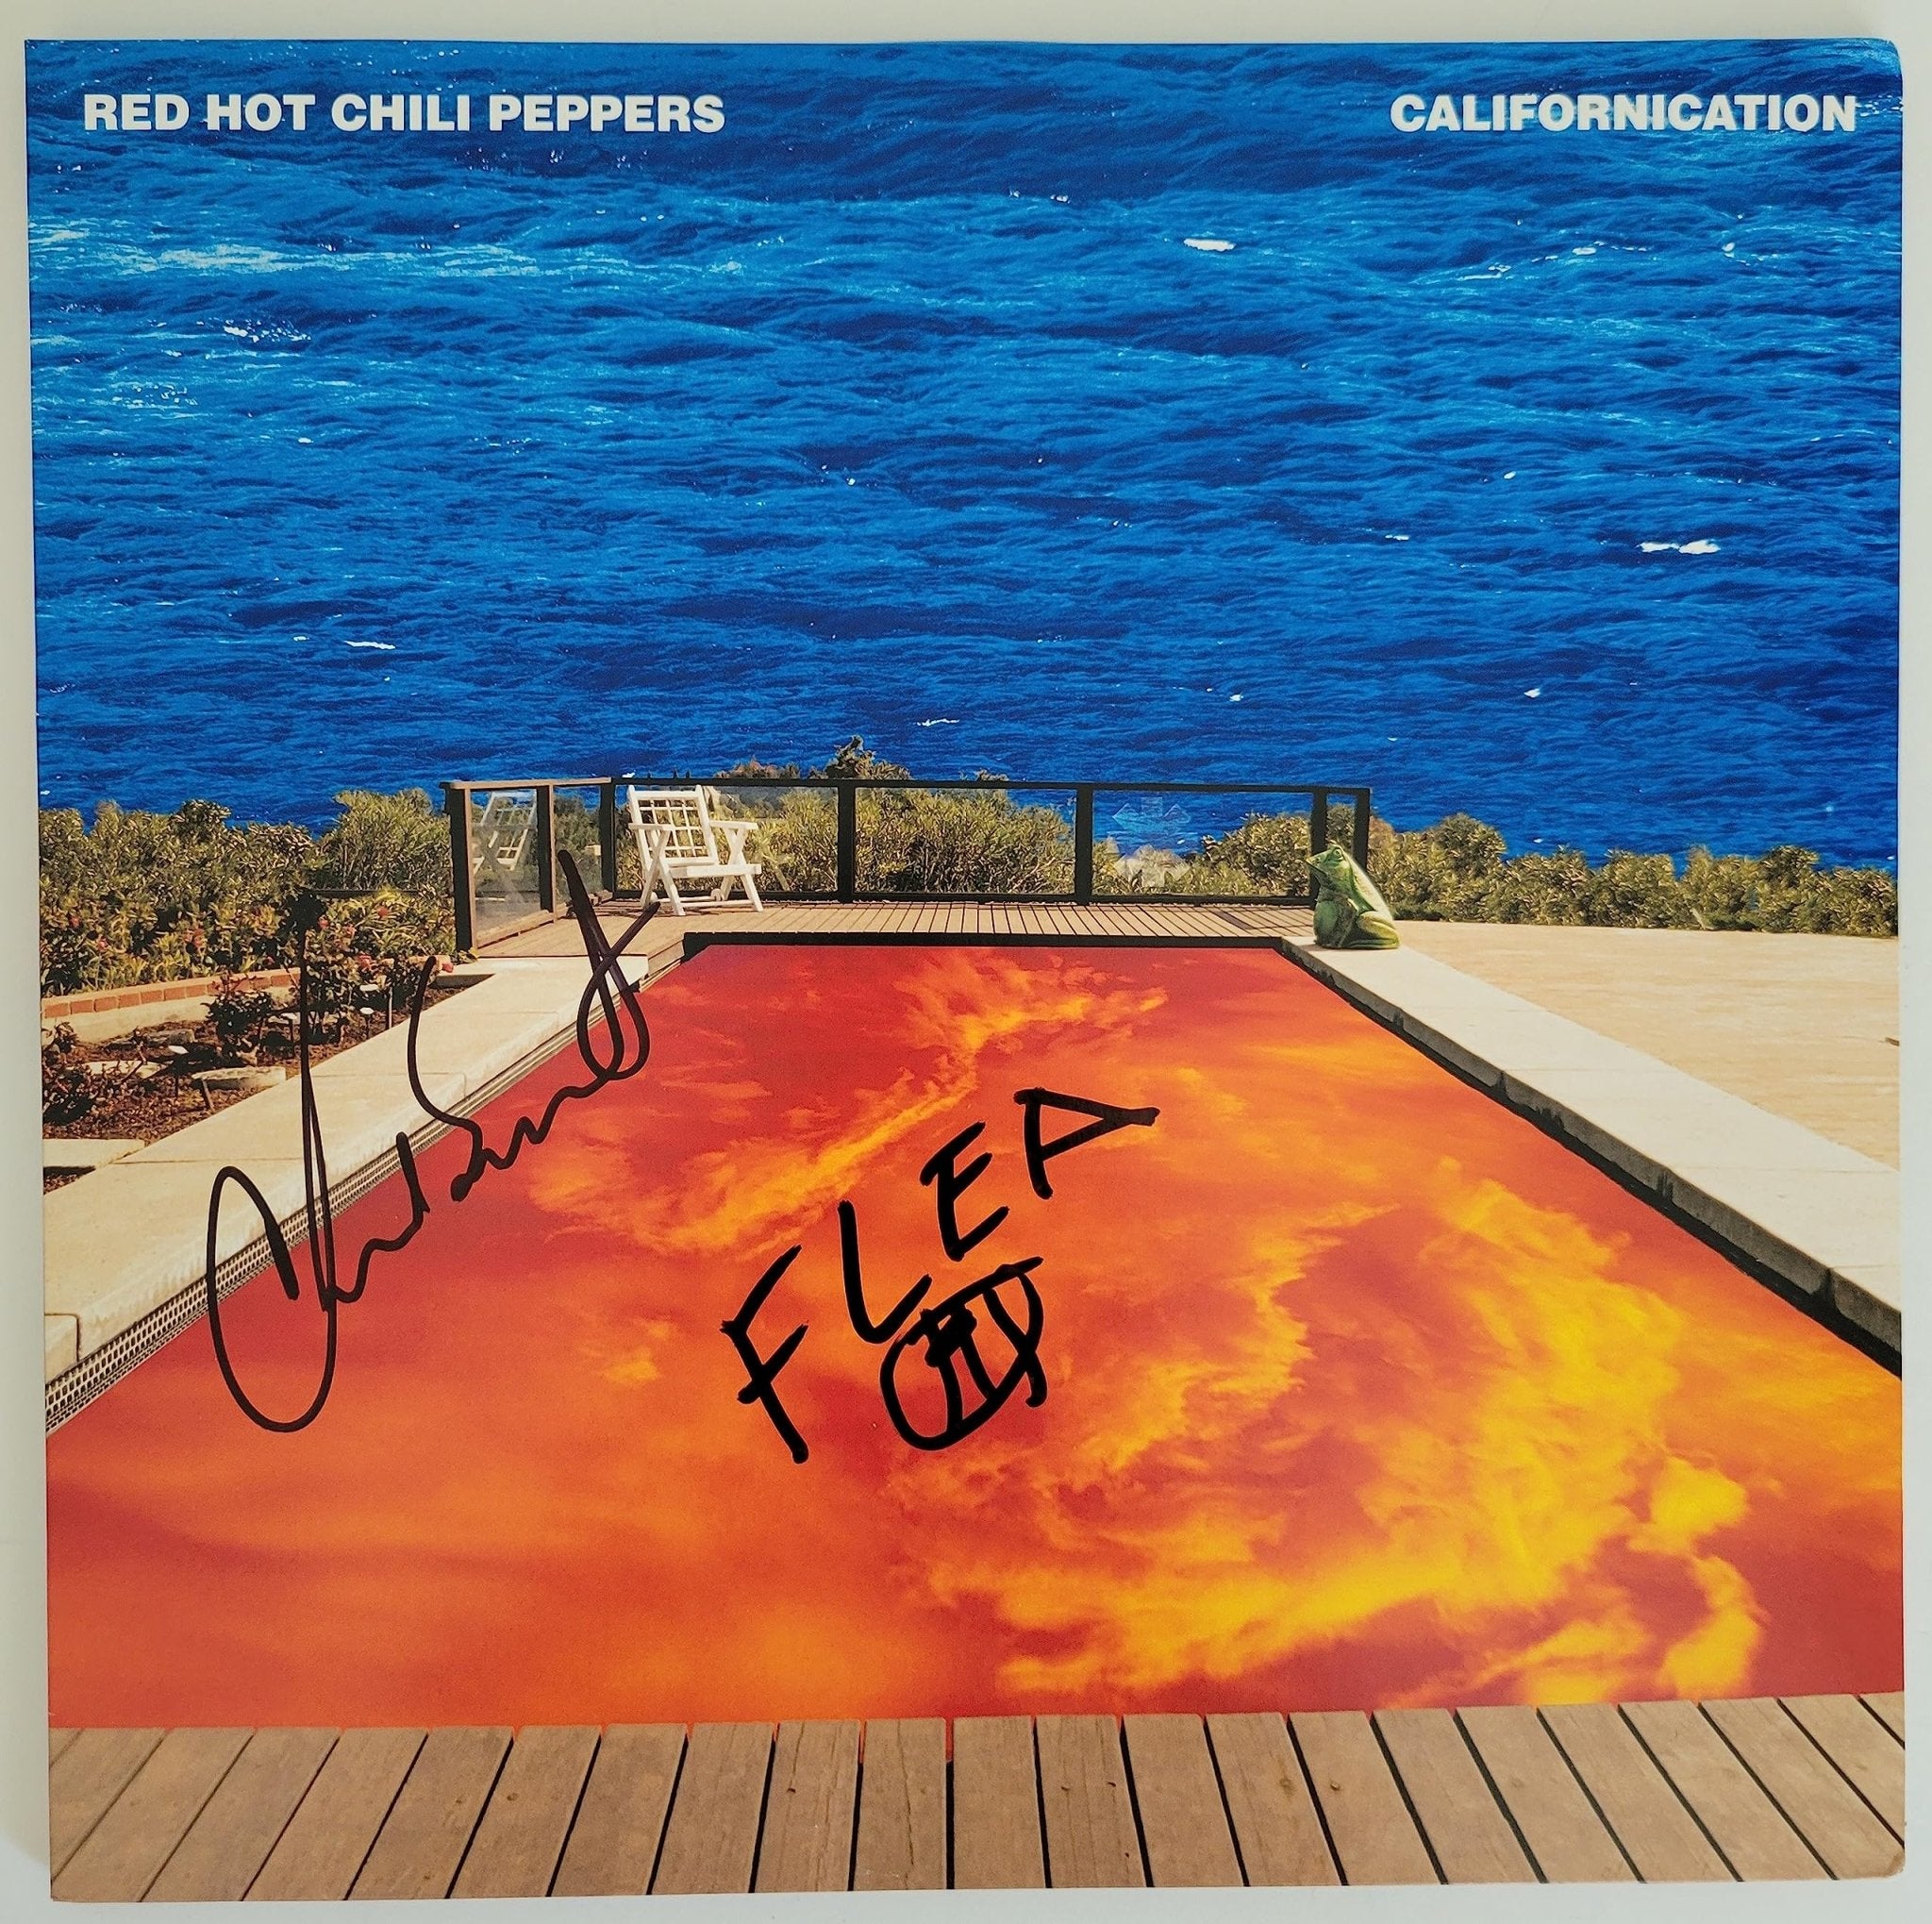 Flea & Chad Smith signed Red Hot Chili Peppers Californication album Vinyl  proof STAR - Coast to Coast Collectibles Memorabilia - #sports_memorabilia#  - #entertainment_memorabilia#